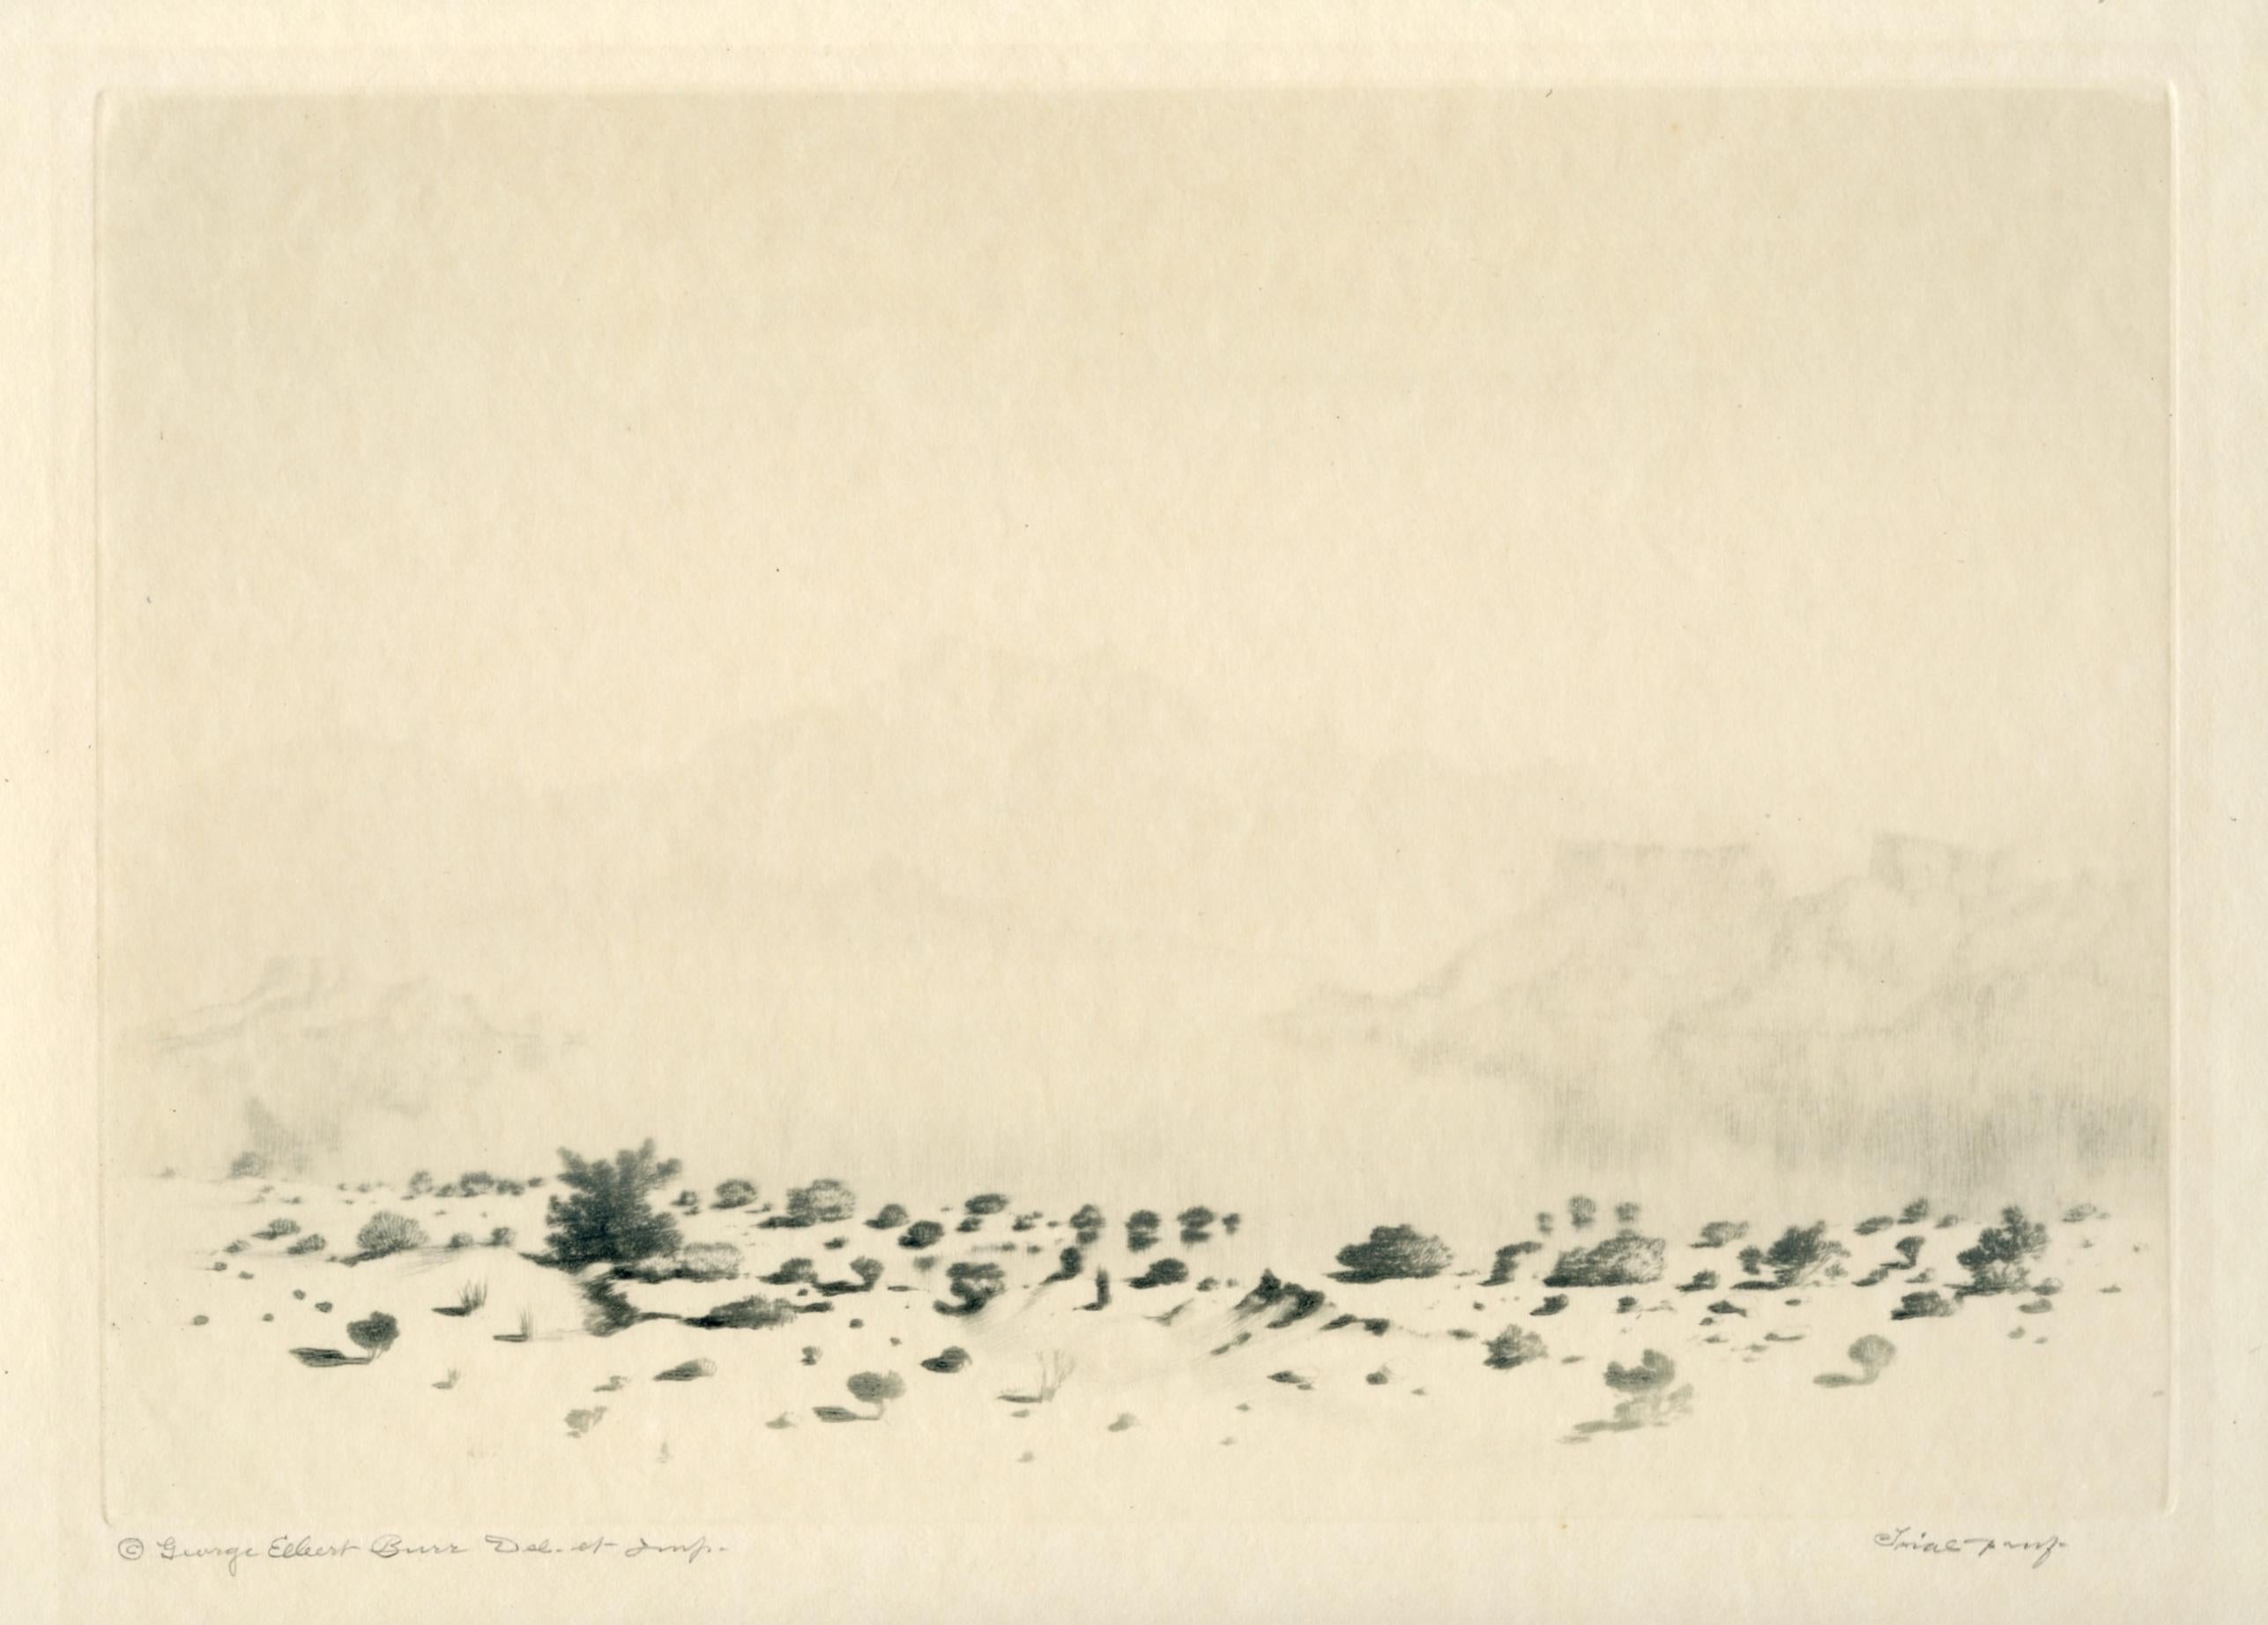 « A Mirage », eau-forte/pointe sèche signée, épreuve d'essai - Print de George Elbert Burr